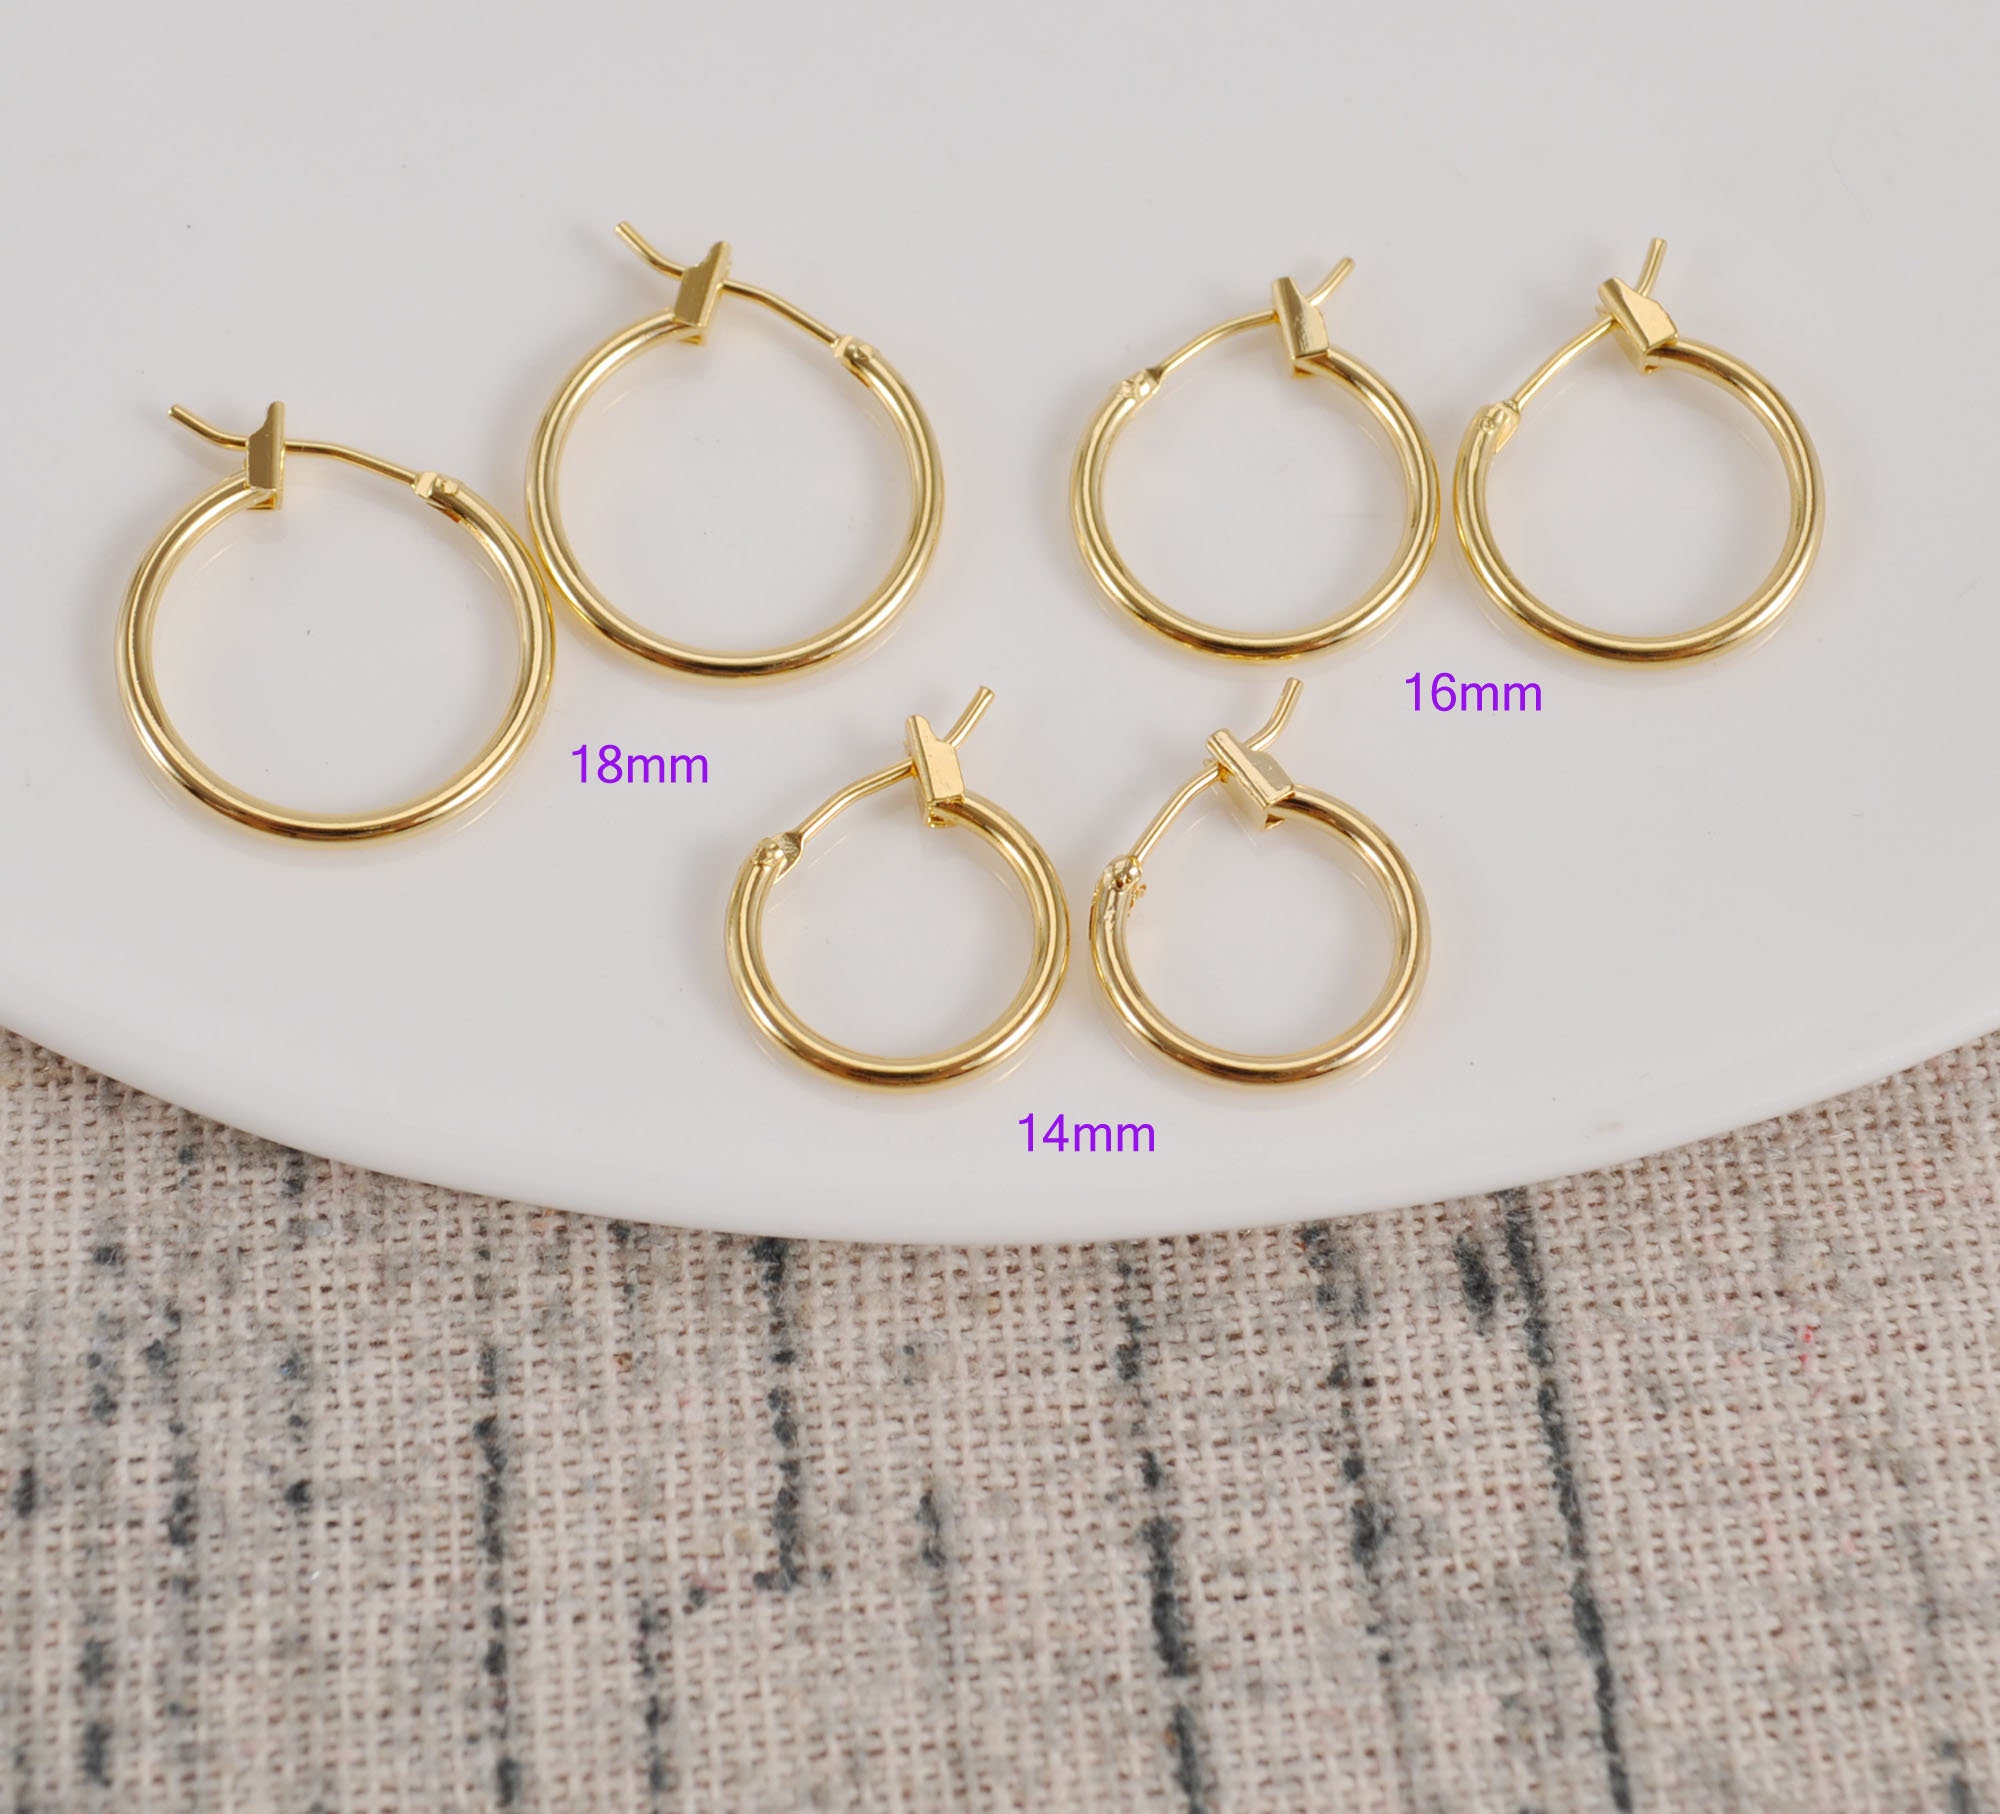  Earring Hooks for Jewelry Making, Shynek 2500Pcs